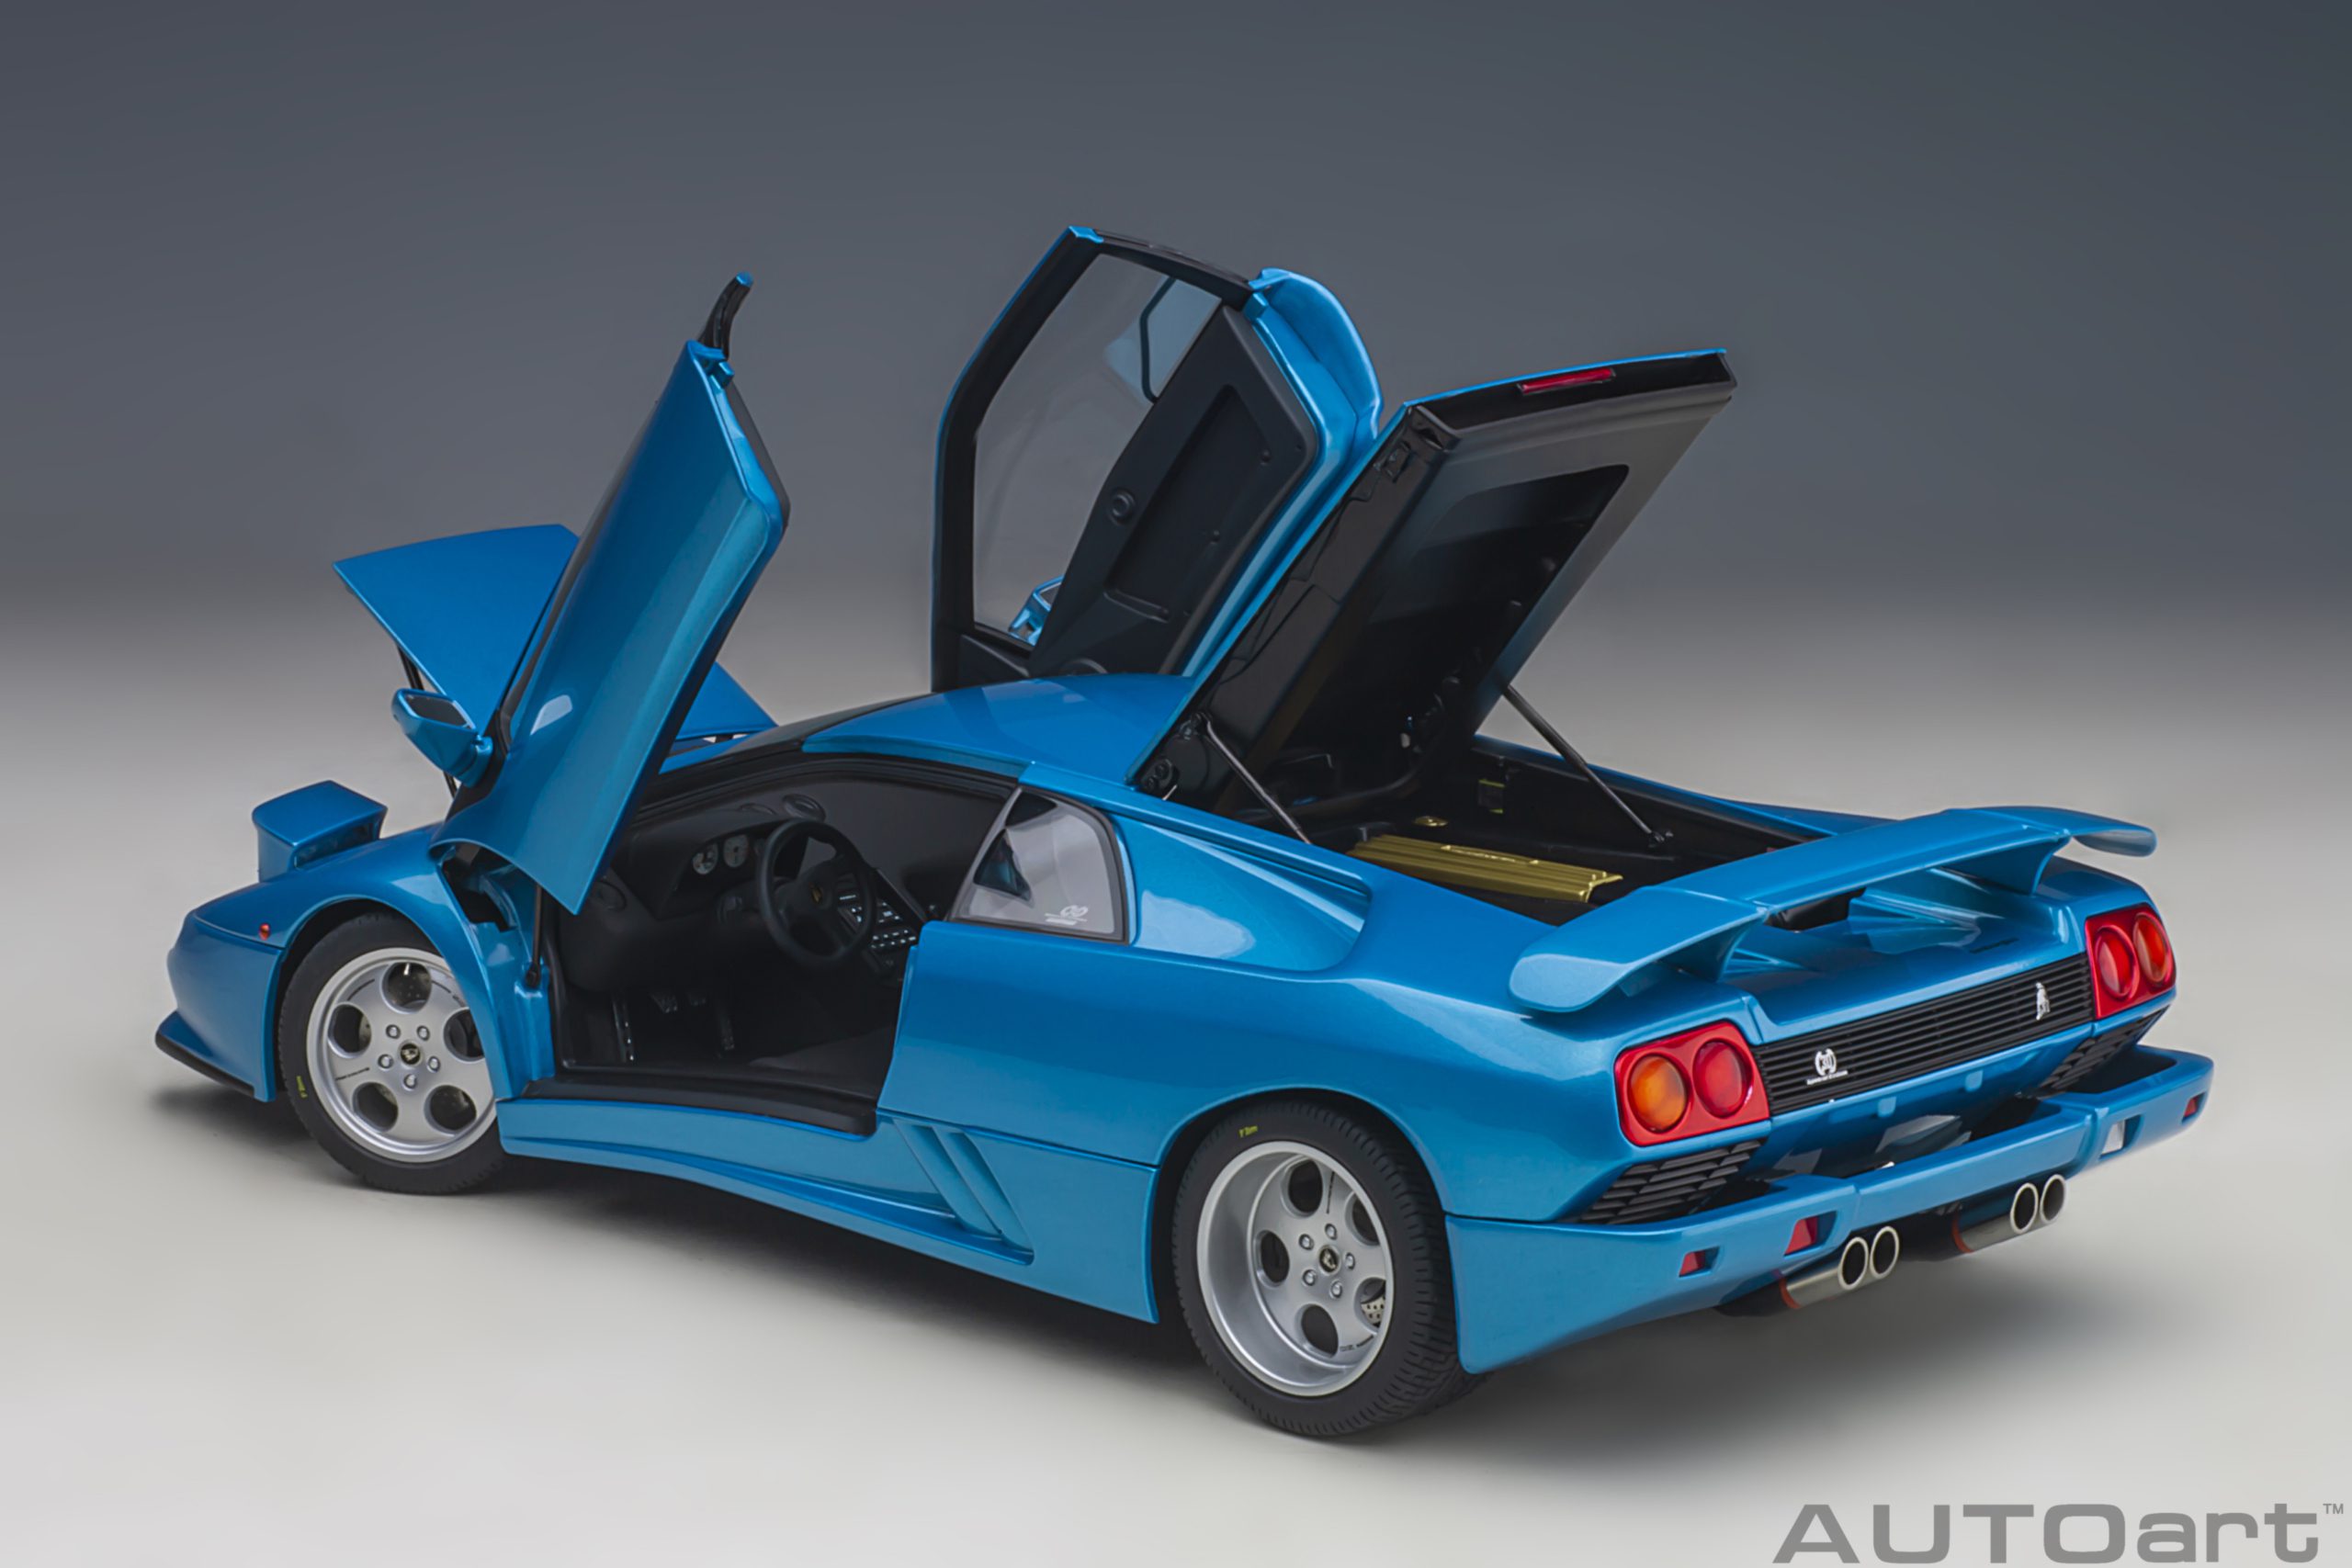 autoart-79156-7-Lamborghini-Diablo-SE30-30th-Anniversary-Edition-Blu-Sirena-metallic-blue